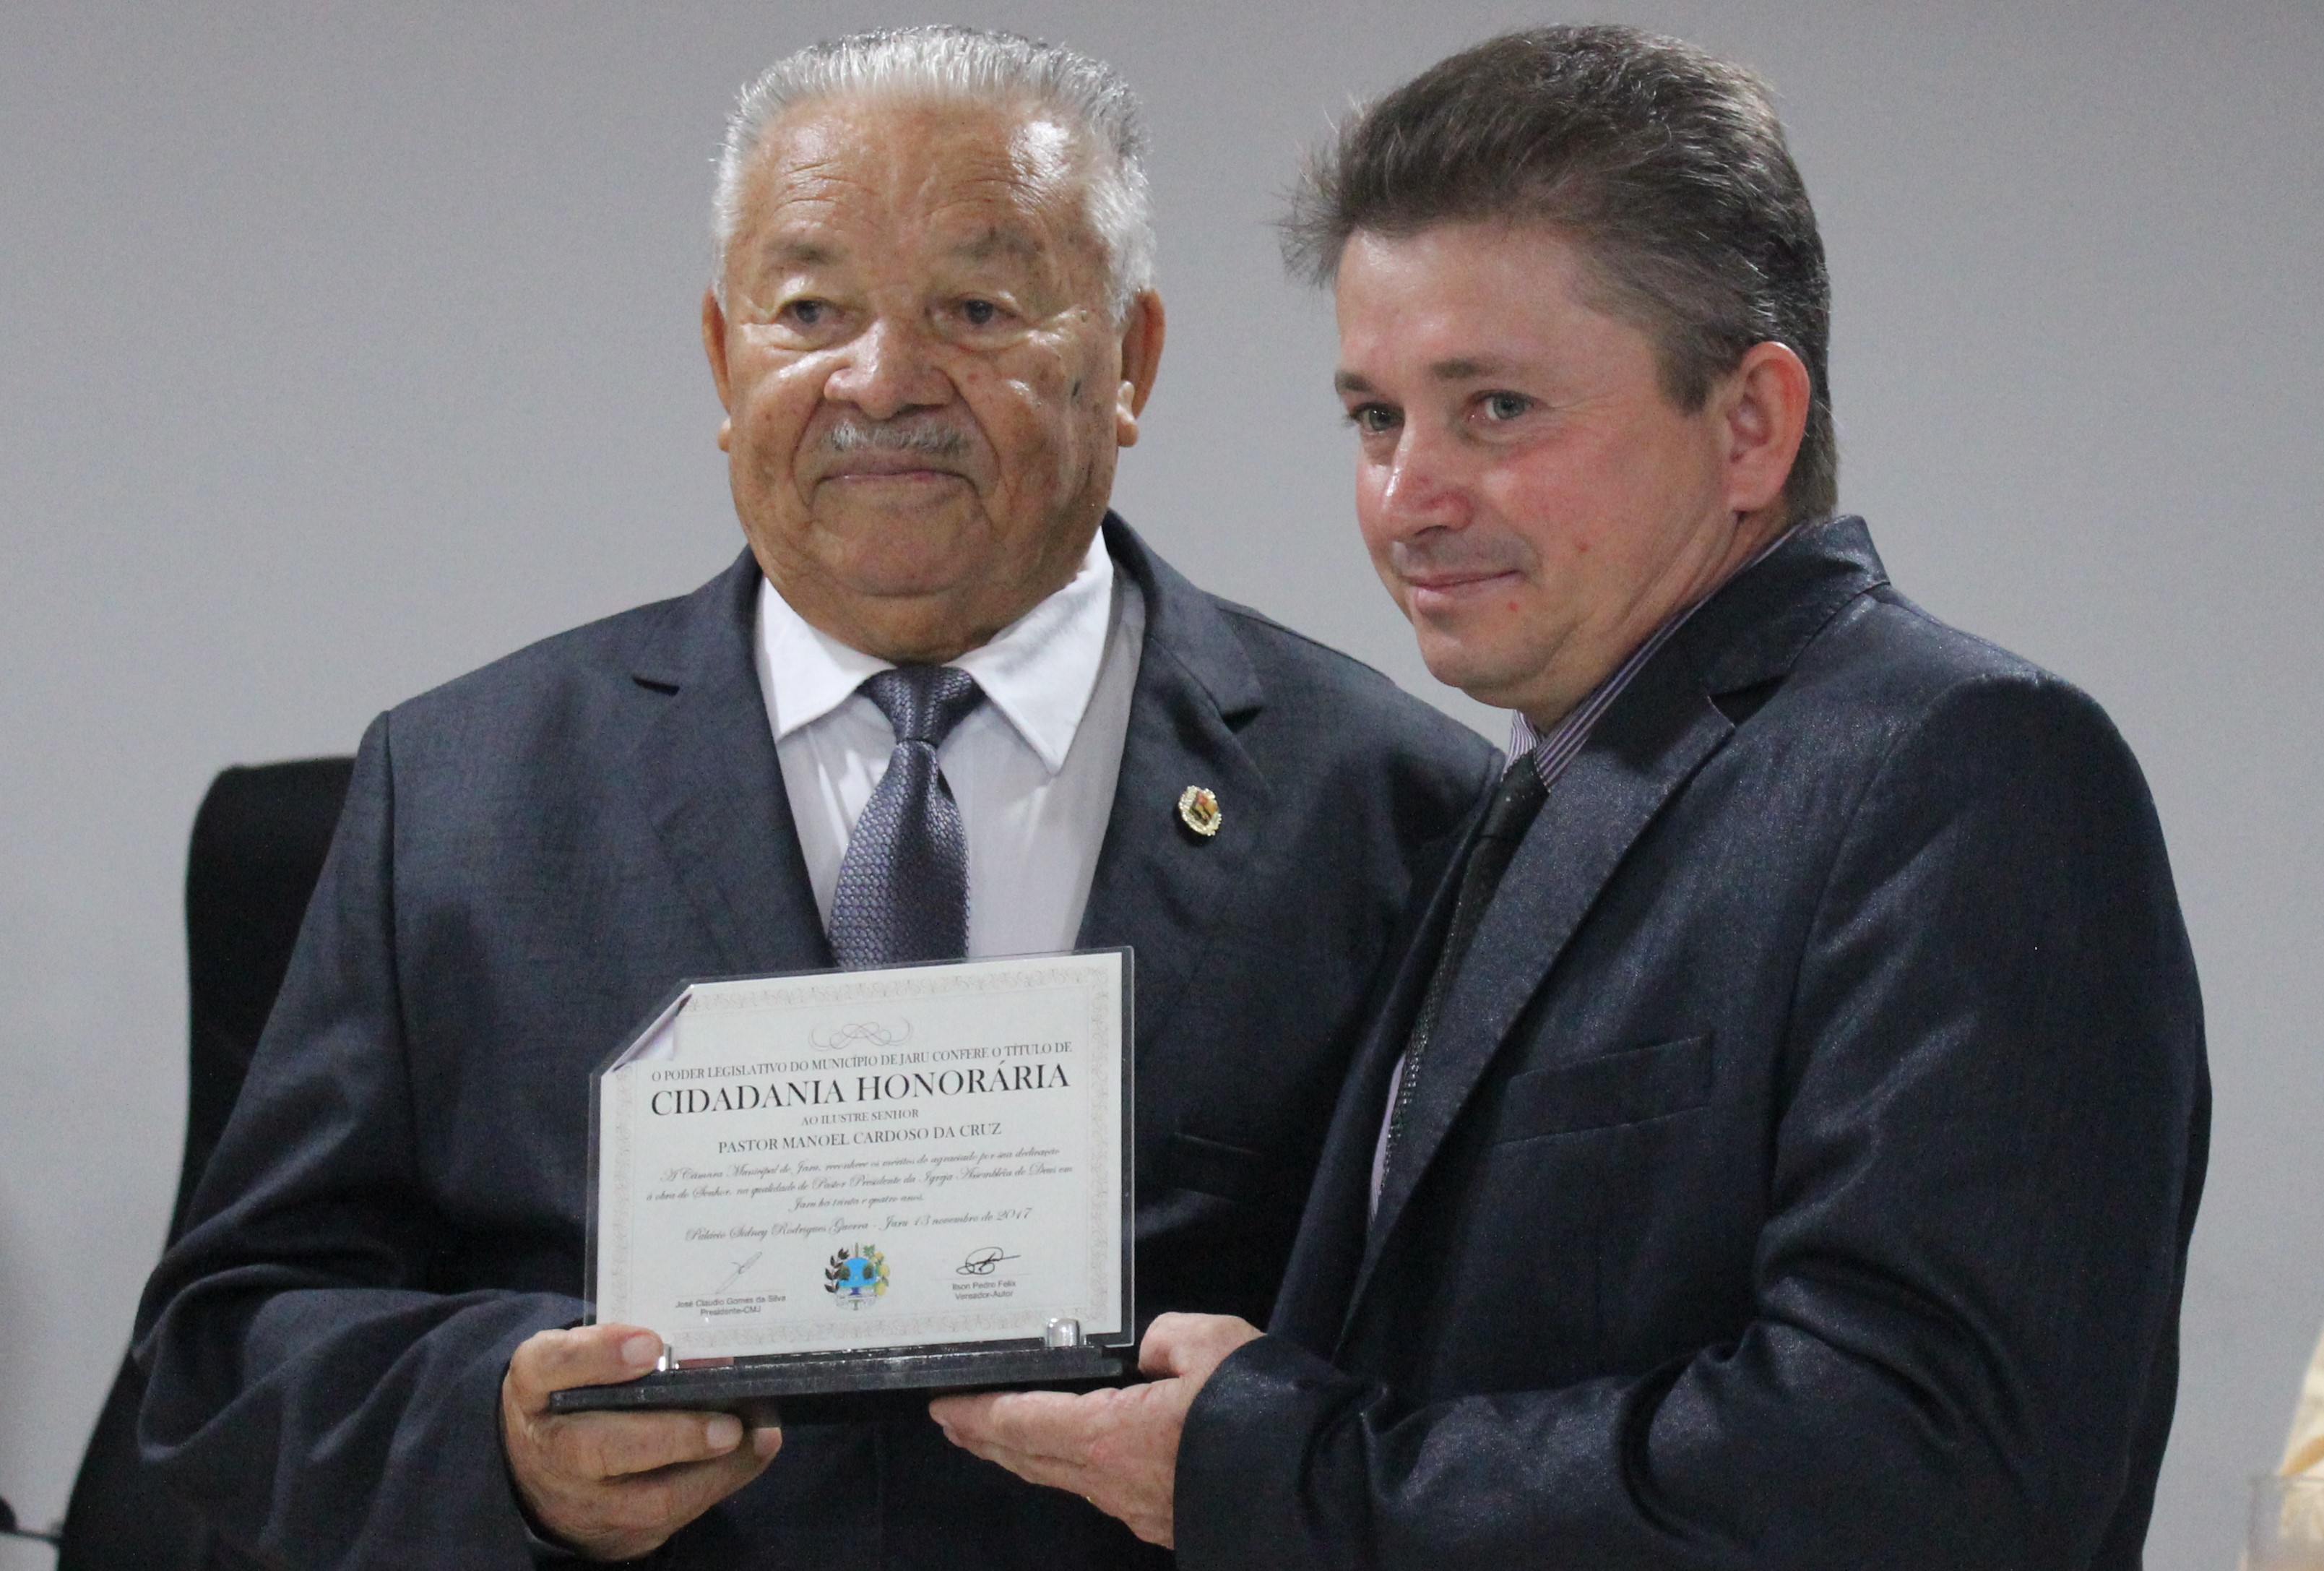 Pastor Manuel Cardoso recebe título de Cidadão Honorário de Jaru 